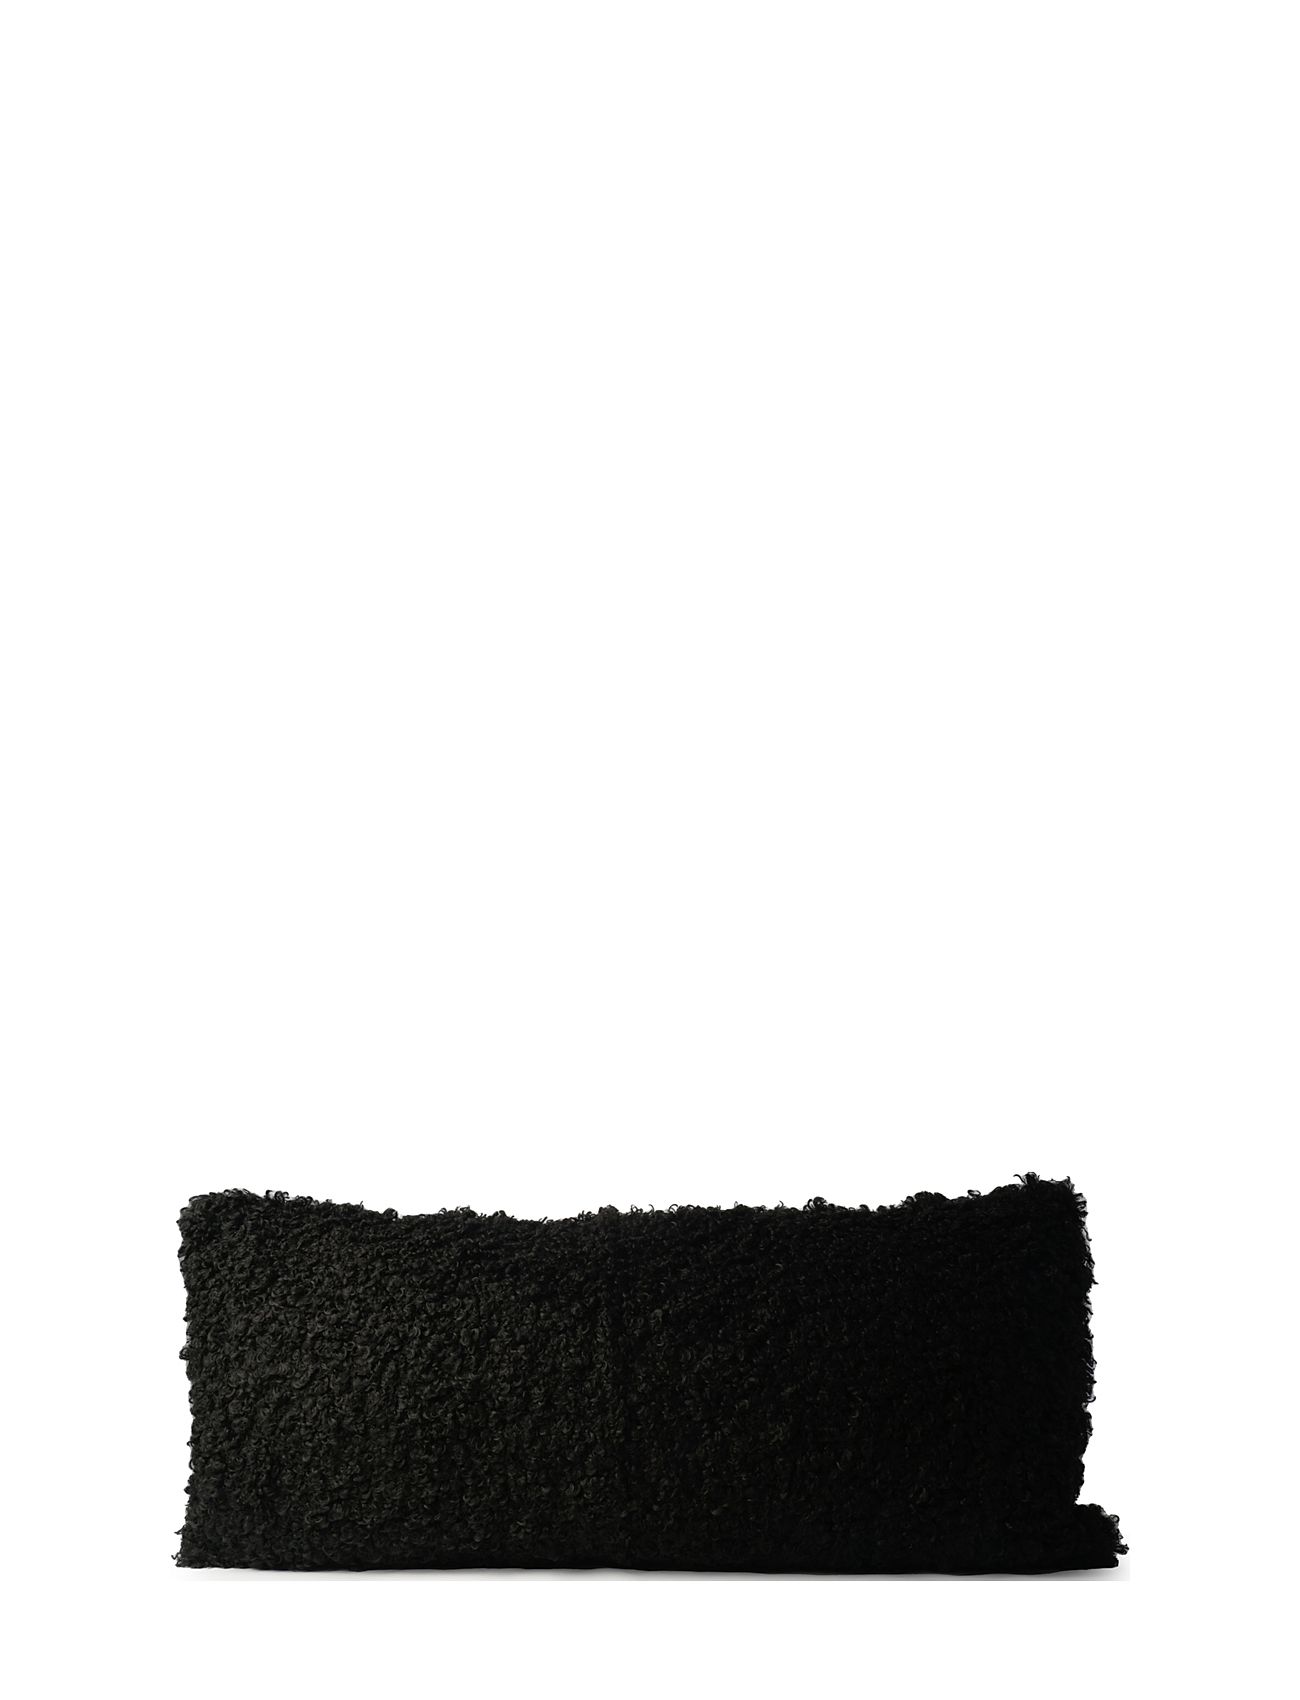 Curly Lamb Fake Fur 40X90Cm Home Textiles Cushions & Blankets Cushion Covers Black Ceannis